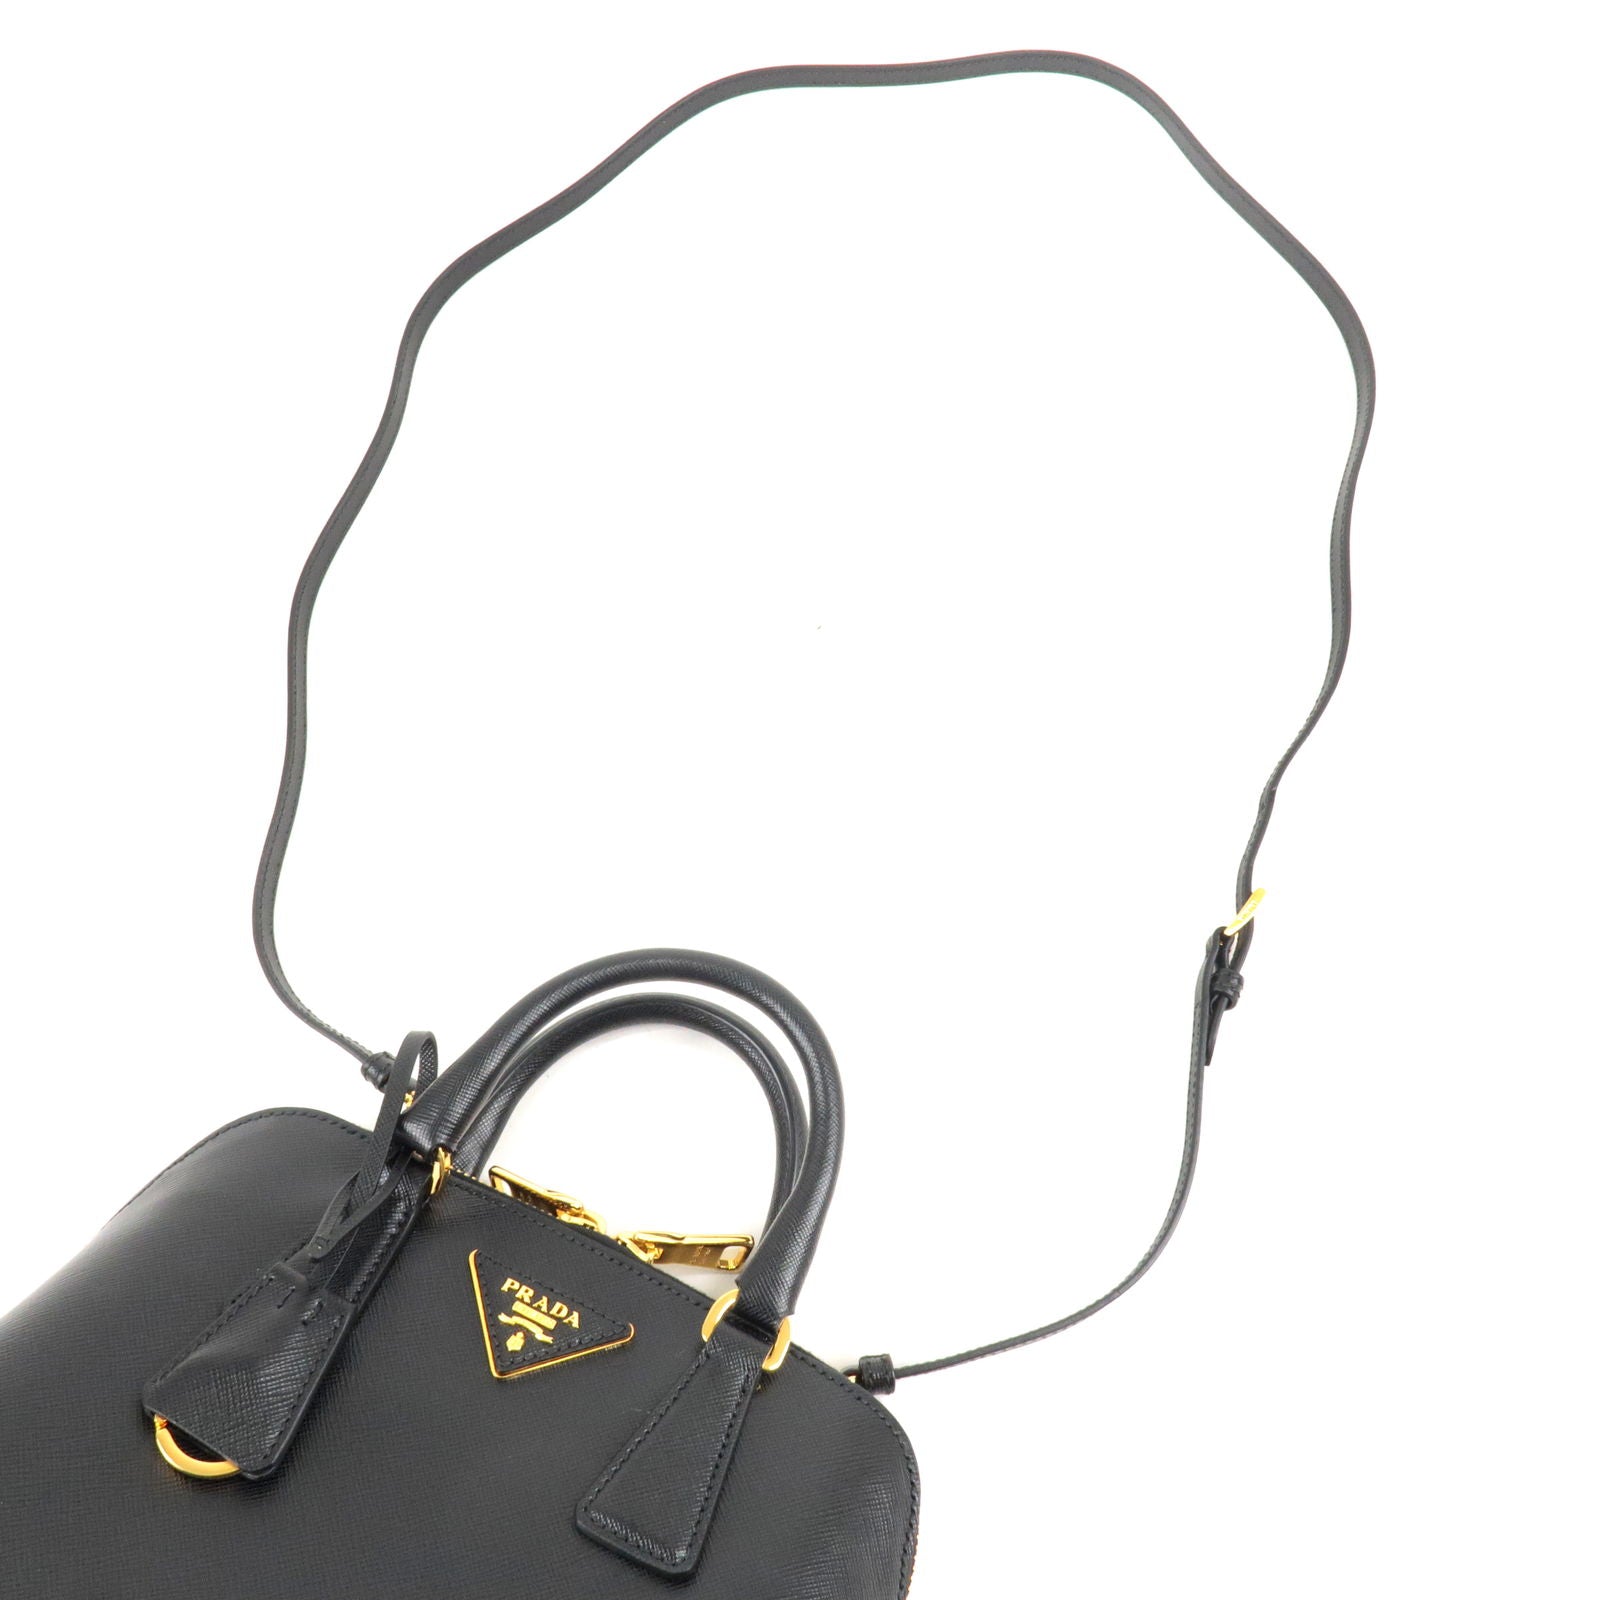 Prada Promenade Saffiano Leather Bag in Black